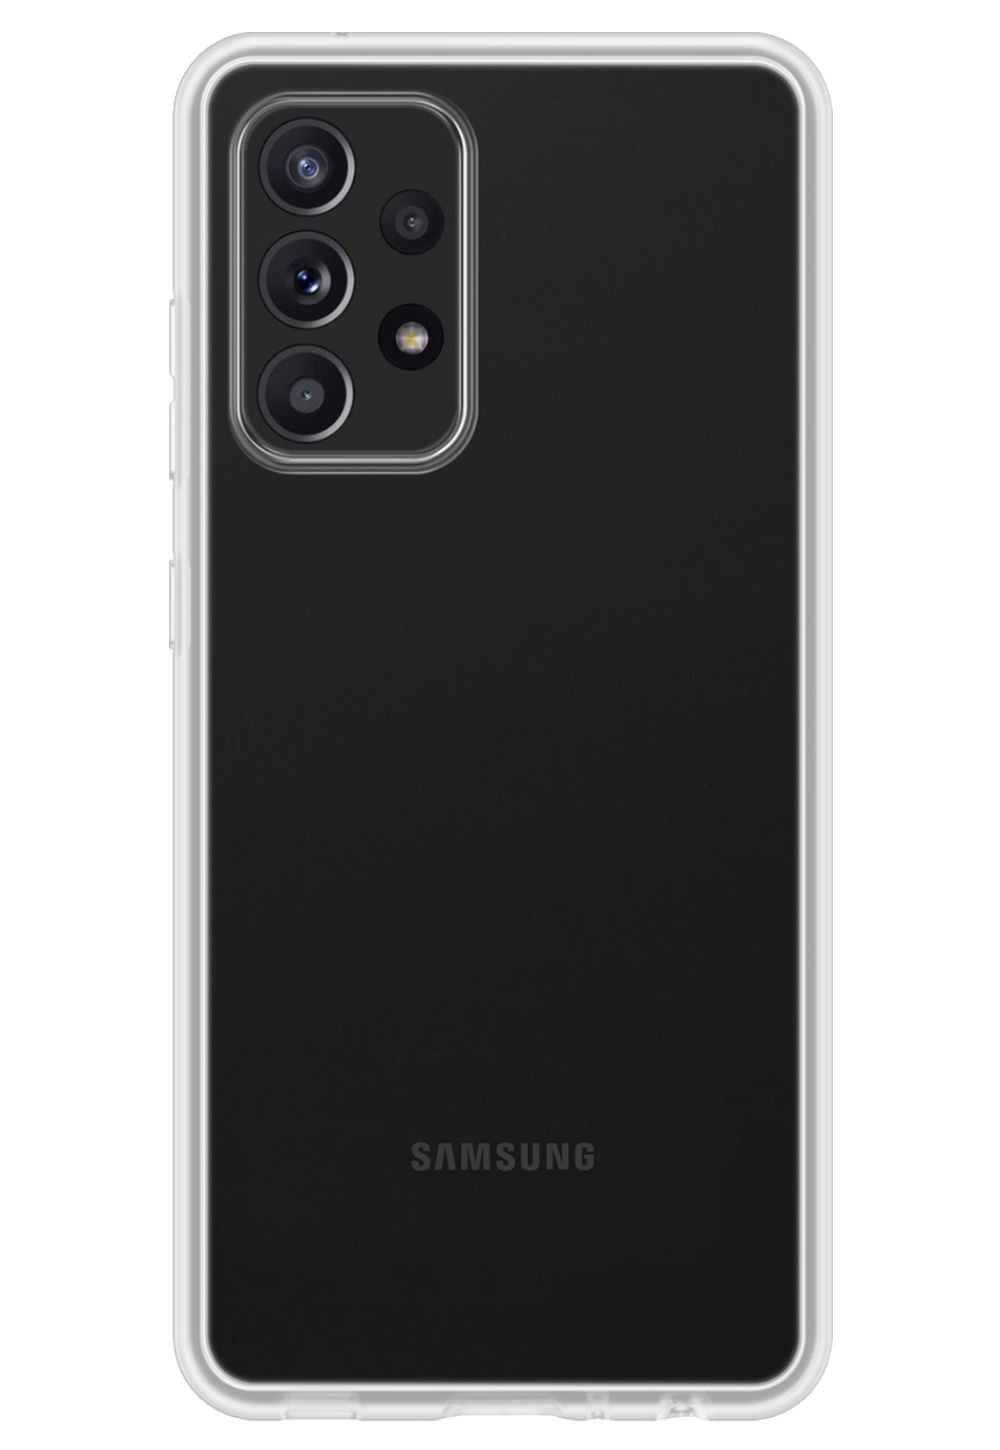 Nomfy Samsung Galaxy A53 Hoesje Siliconen - Samsung Galaxy Galaxy A53 Hoesje Transparant Case - Samsung Galaxy Galaxy A53 Cover Siliconen Back Cover - Transparant